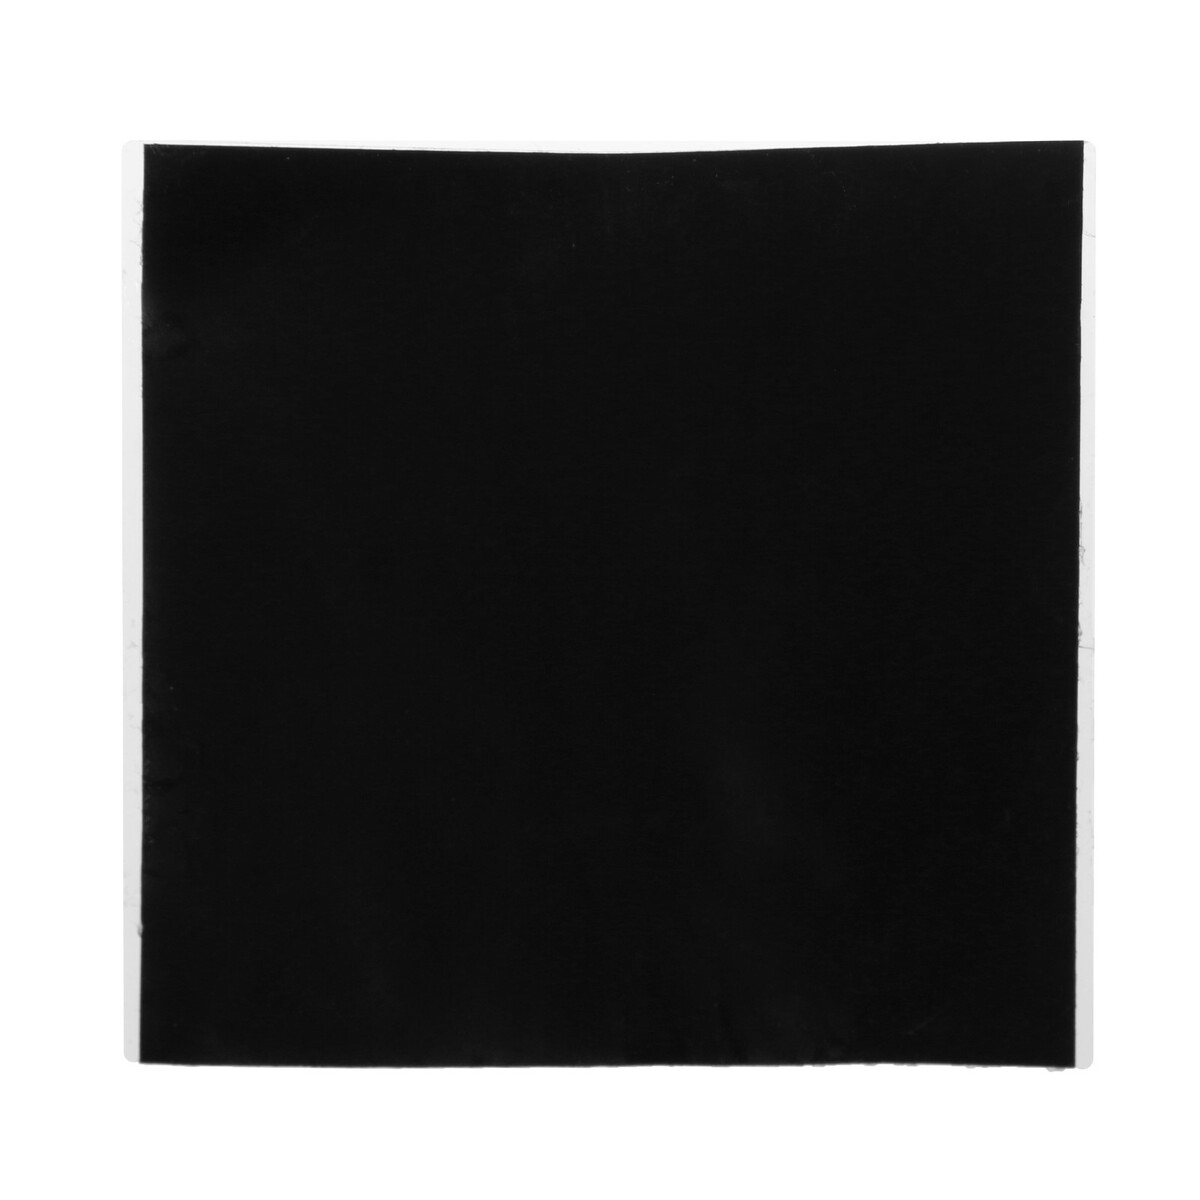 Водонепроницаемая изолента 10×10 см, черный